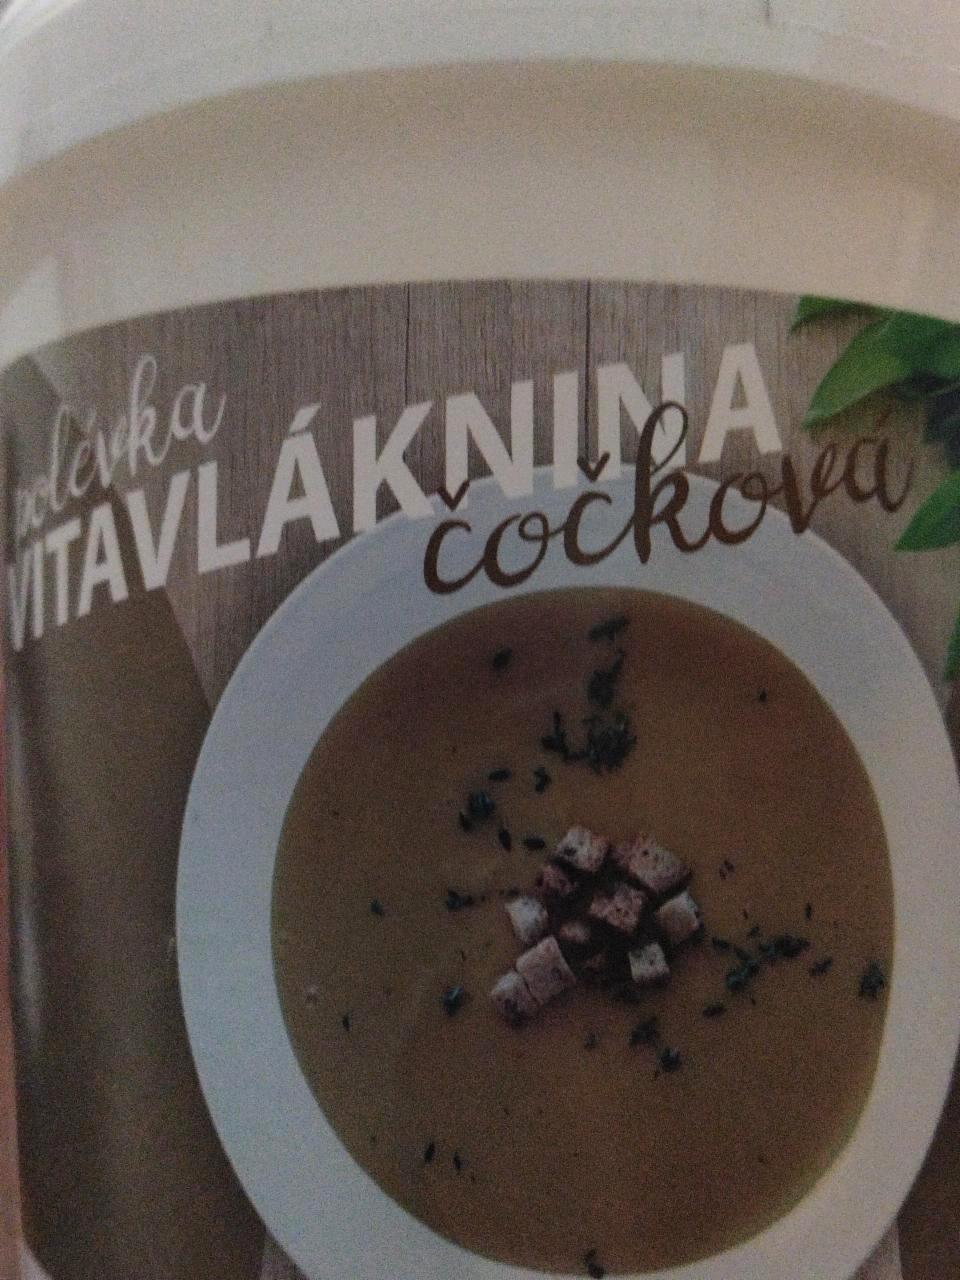 Fotografie - Čočková polévka Vitavláknina